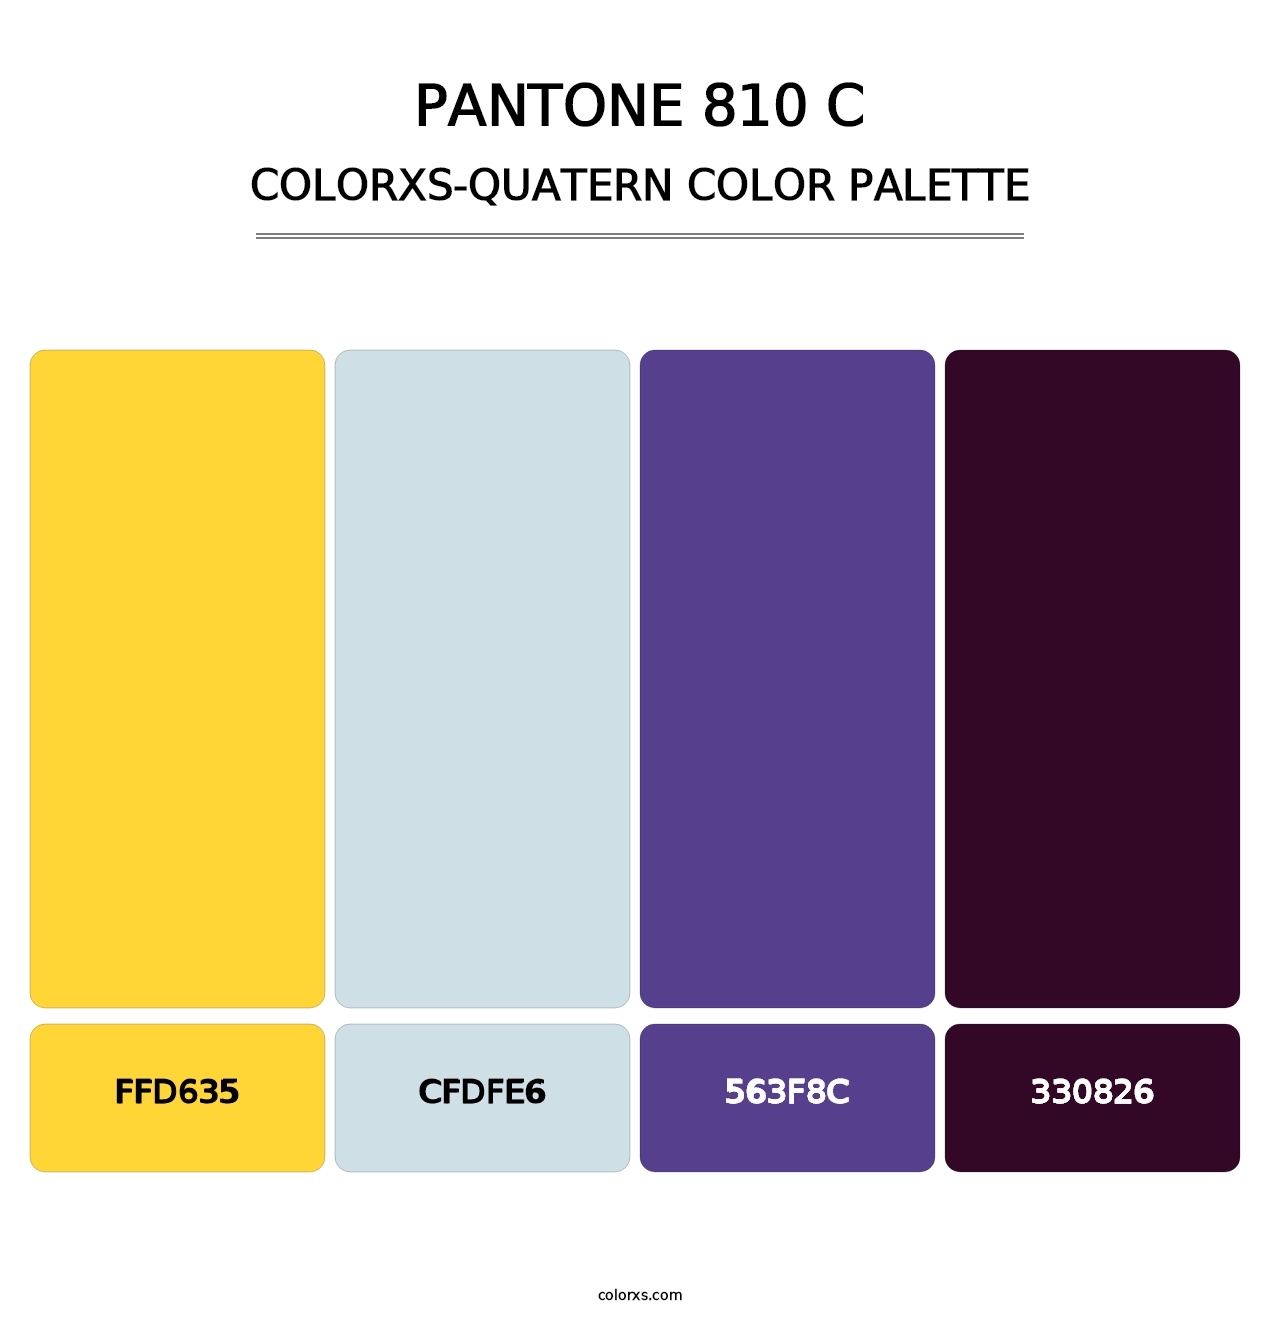 PANTONE 810 C - Colorxs Quatern Palette